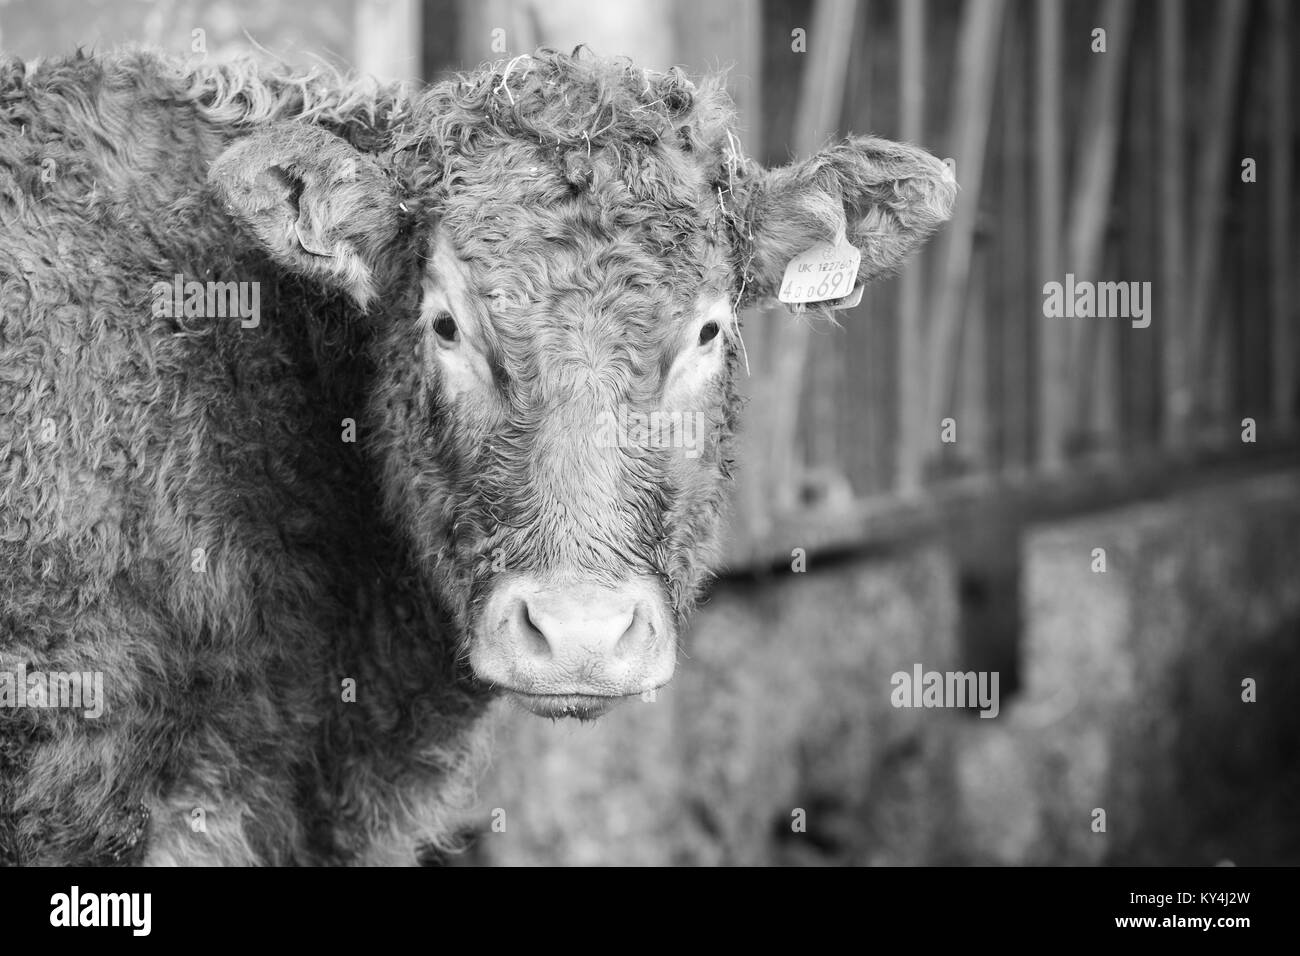 Vache dans la cour de ferme Banque D'Images